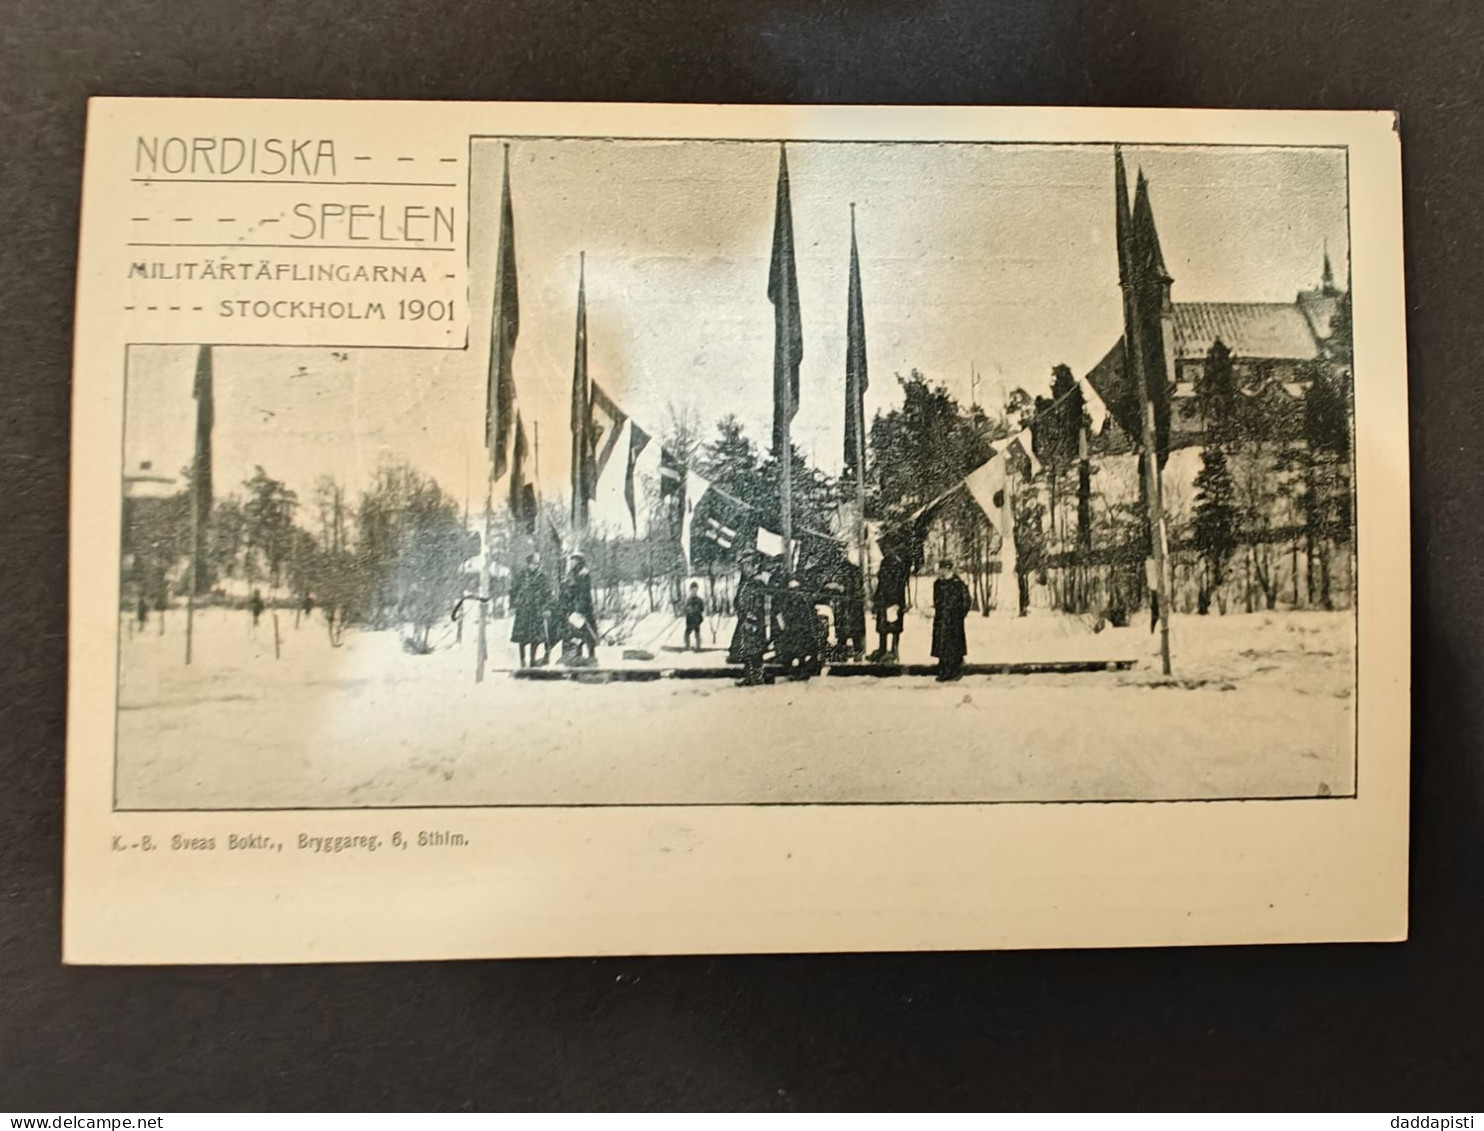 [BB] Nordiska Spelen - Militärtäflingarna -- Stockholm 1901. Used. - Sweden